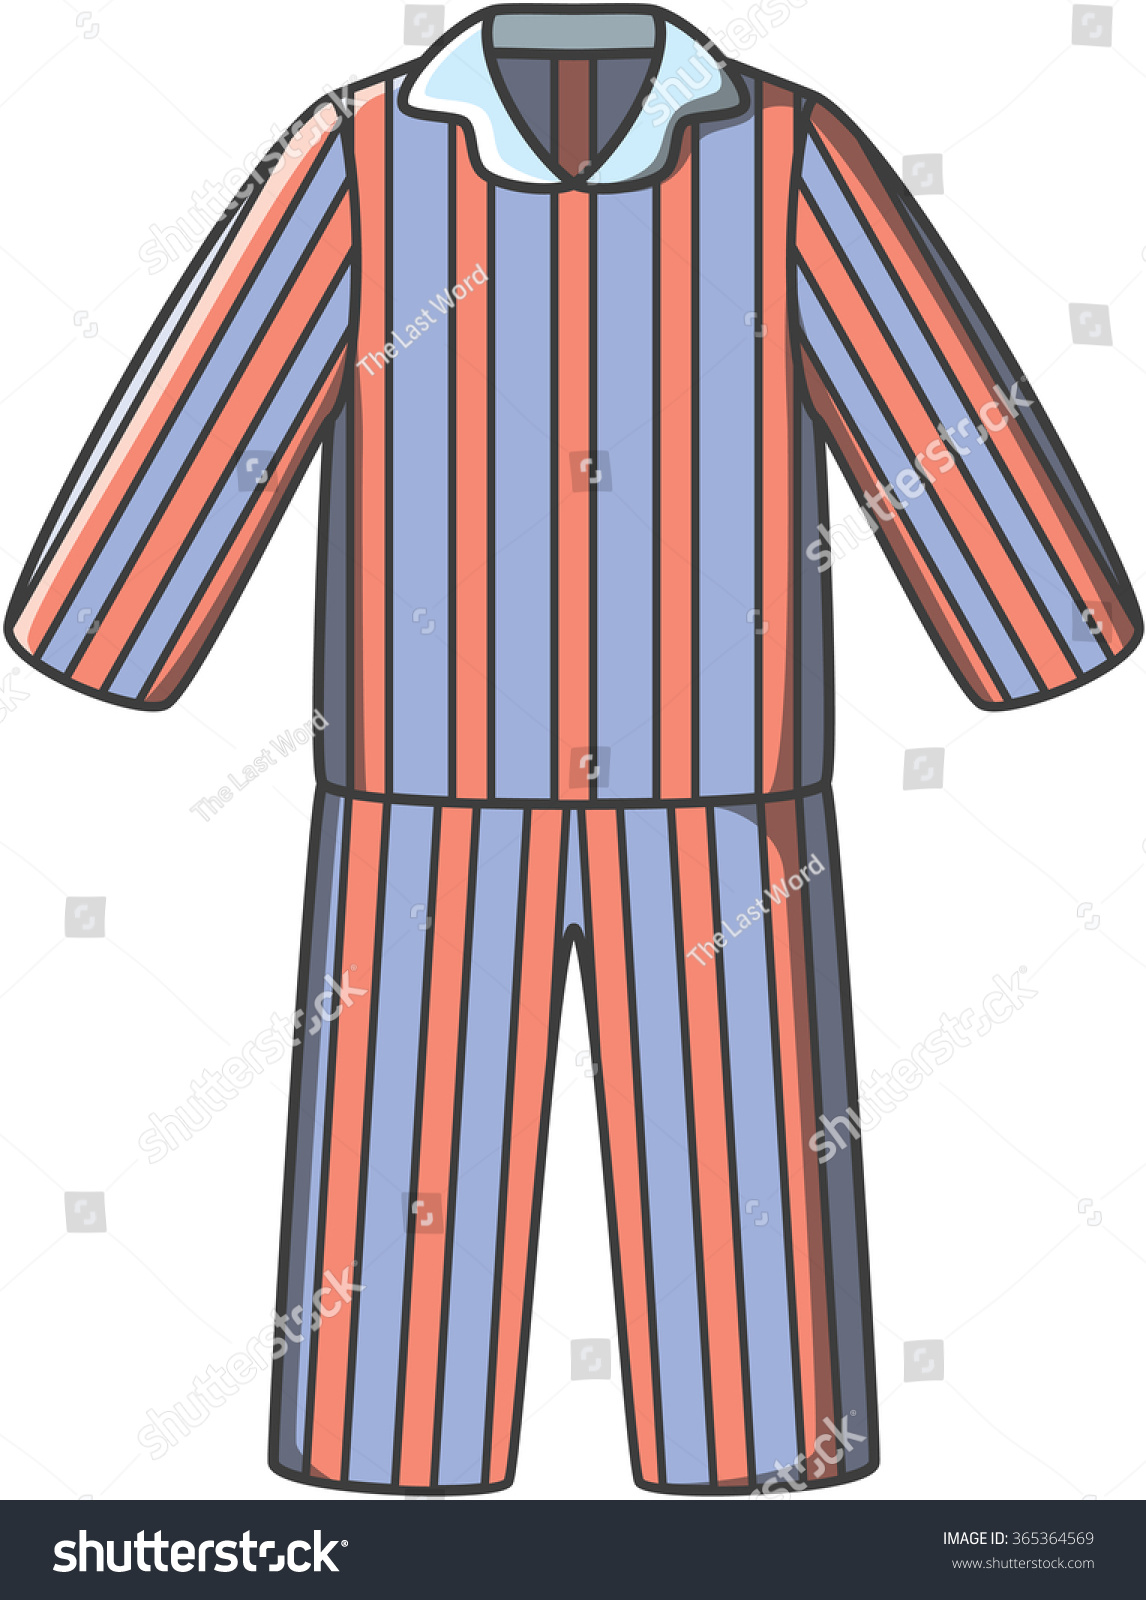 Pajamas Doodle Vector - 365364569 : Shutterstock